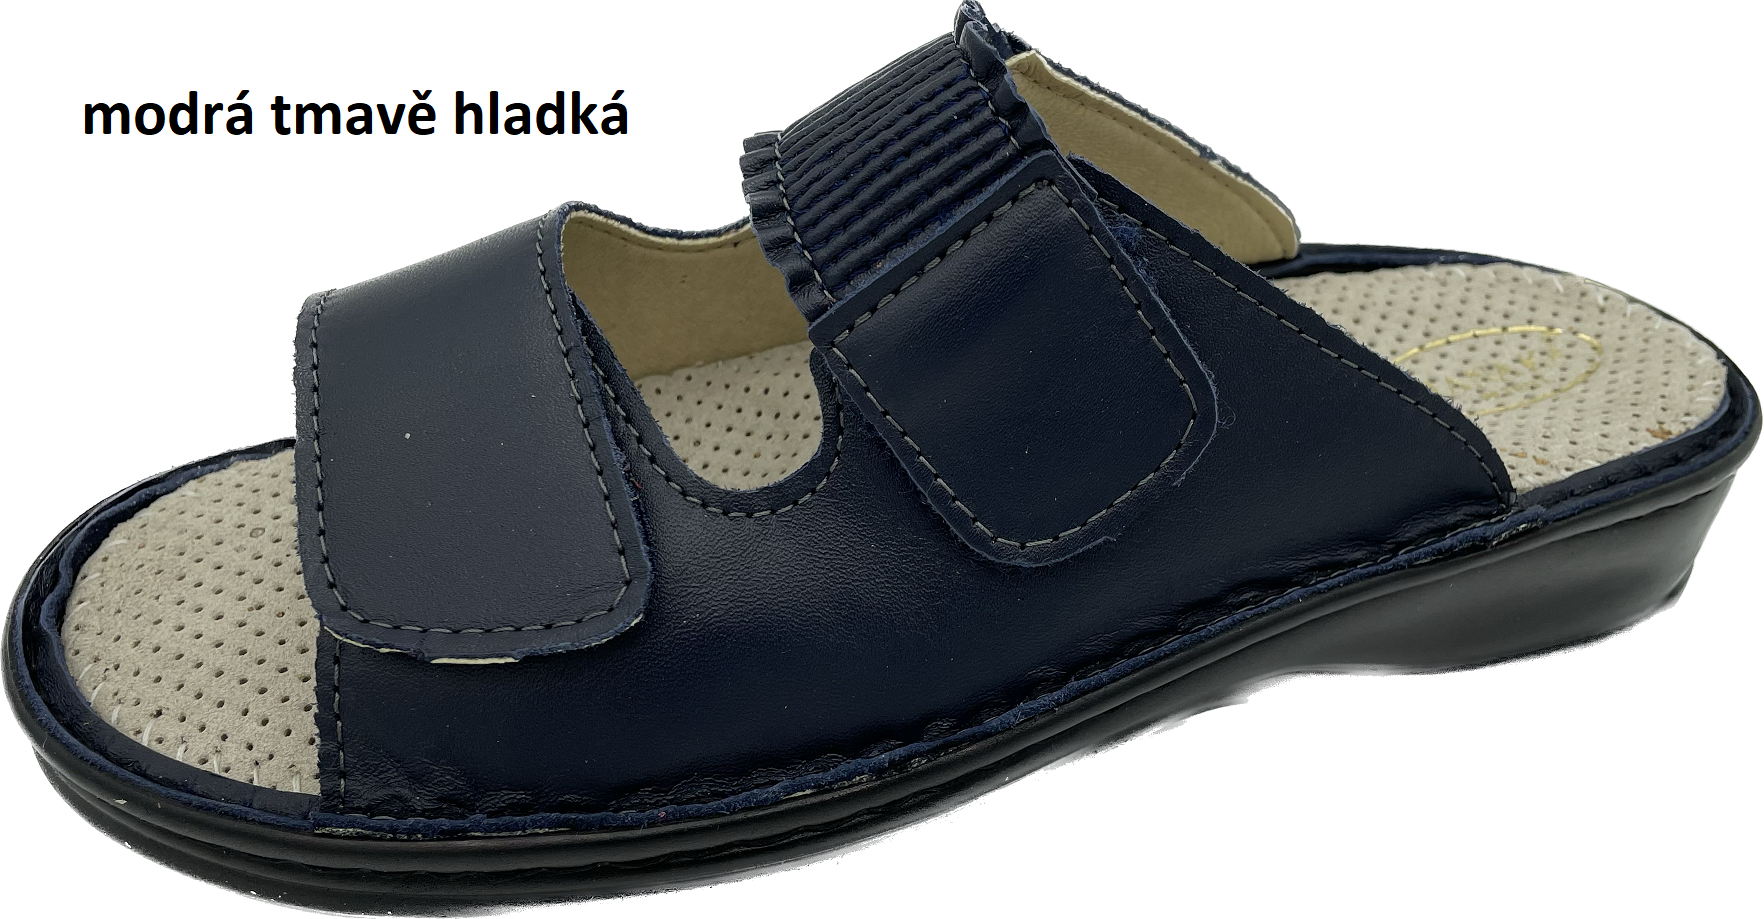 Boty Hanák vzor 304 - černá podešev Barva usně: modrá tmavě hladká, Velikosti obuvi: 36